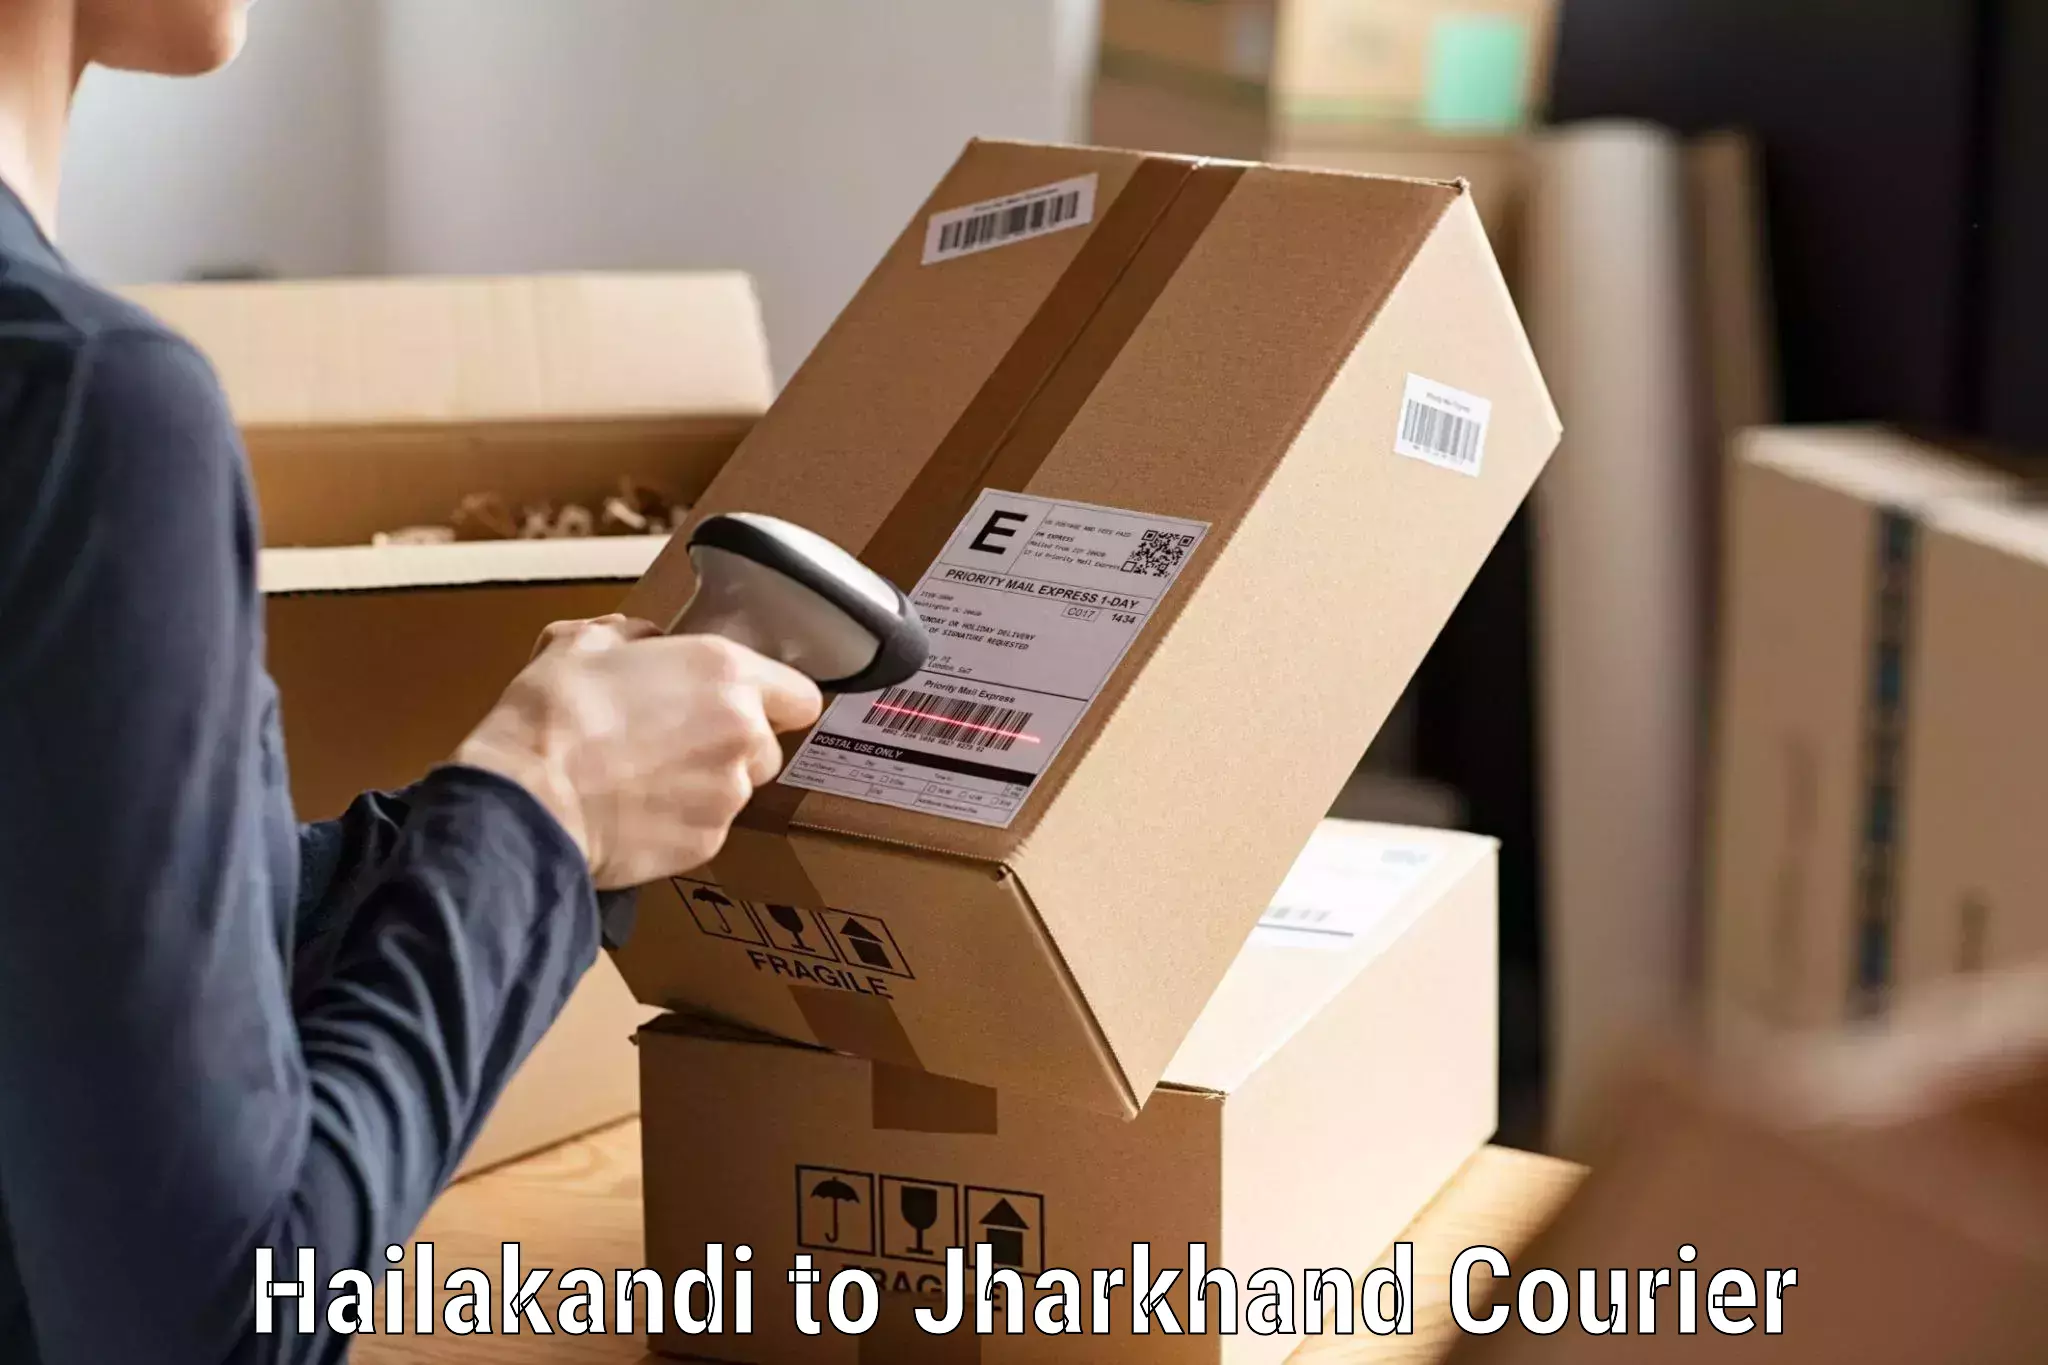 Courier service innovation Hailakandi to Sahibganj